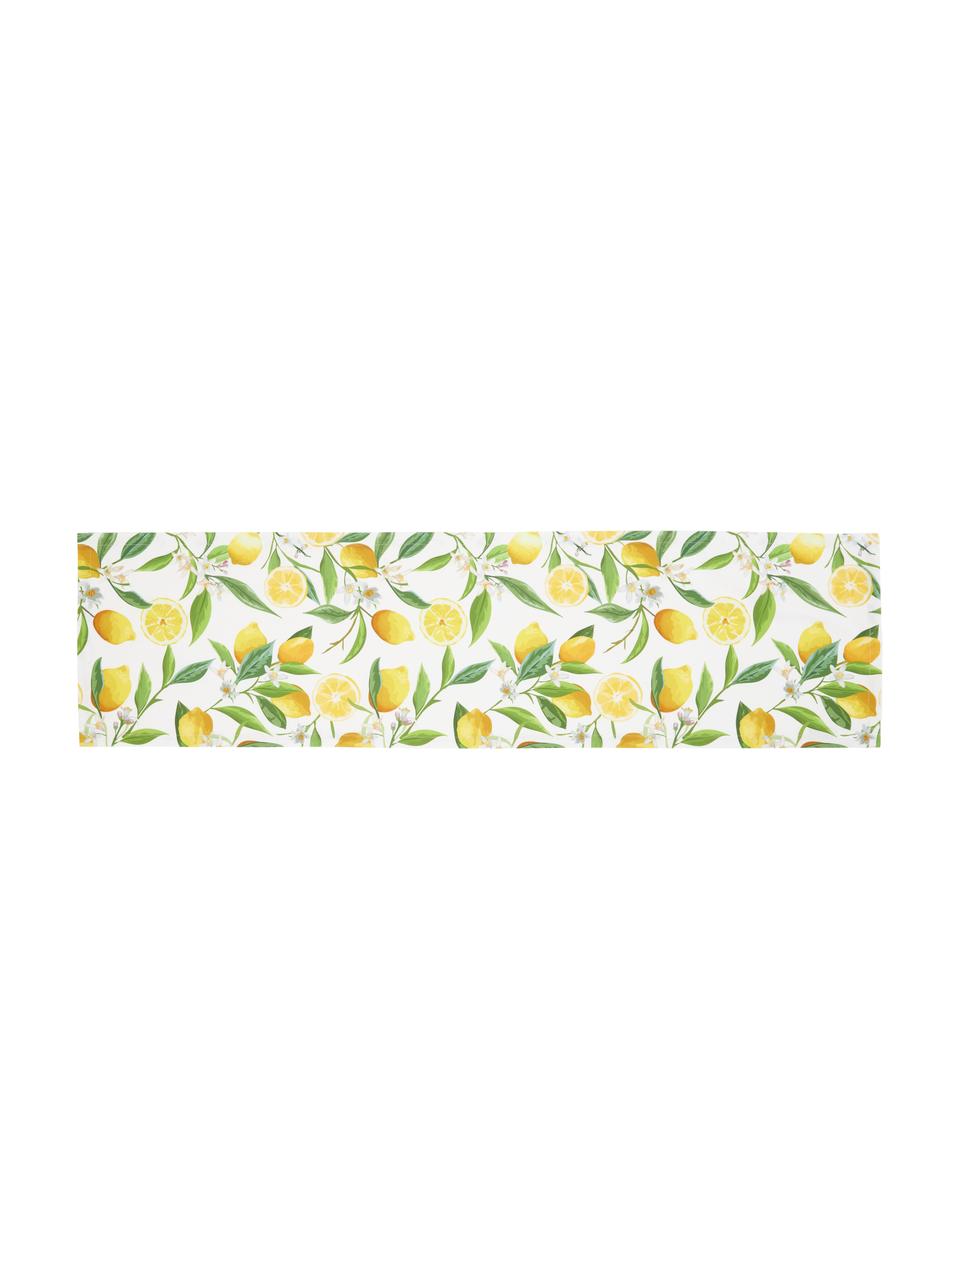 Chemin de table coton imprimé citron Frutta, 100 % coton, Jaune, blanc, vert, larg. 40 x long. 145 cm